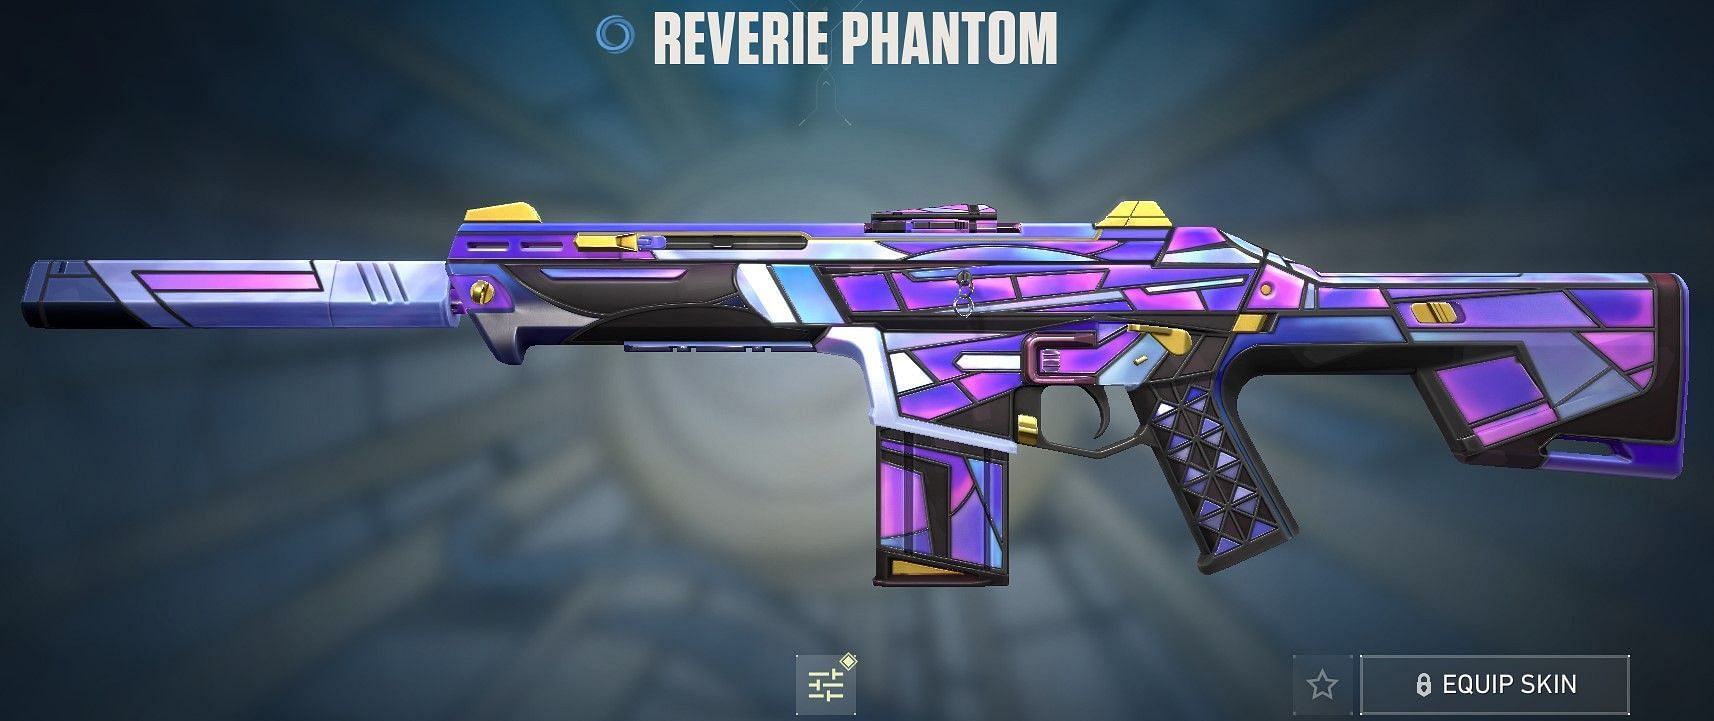 Reverie Phantom (Image via Riot Games)